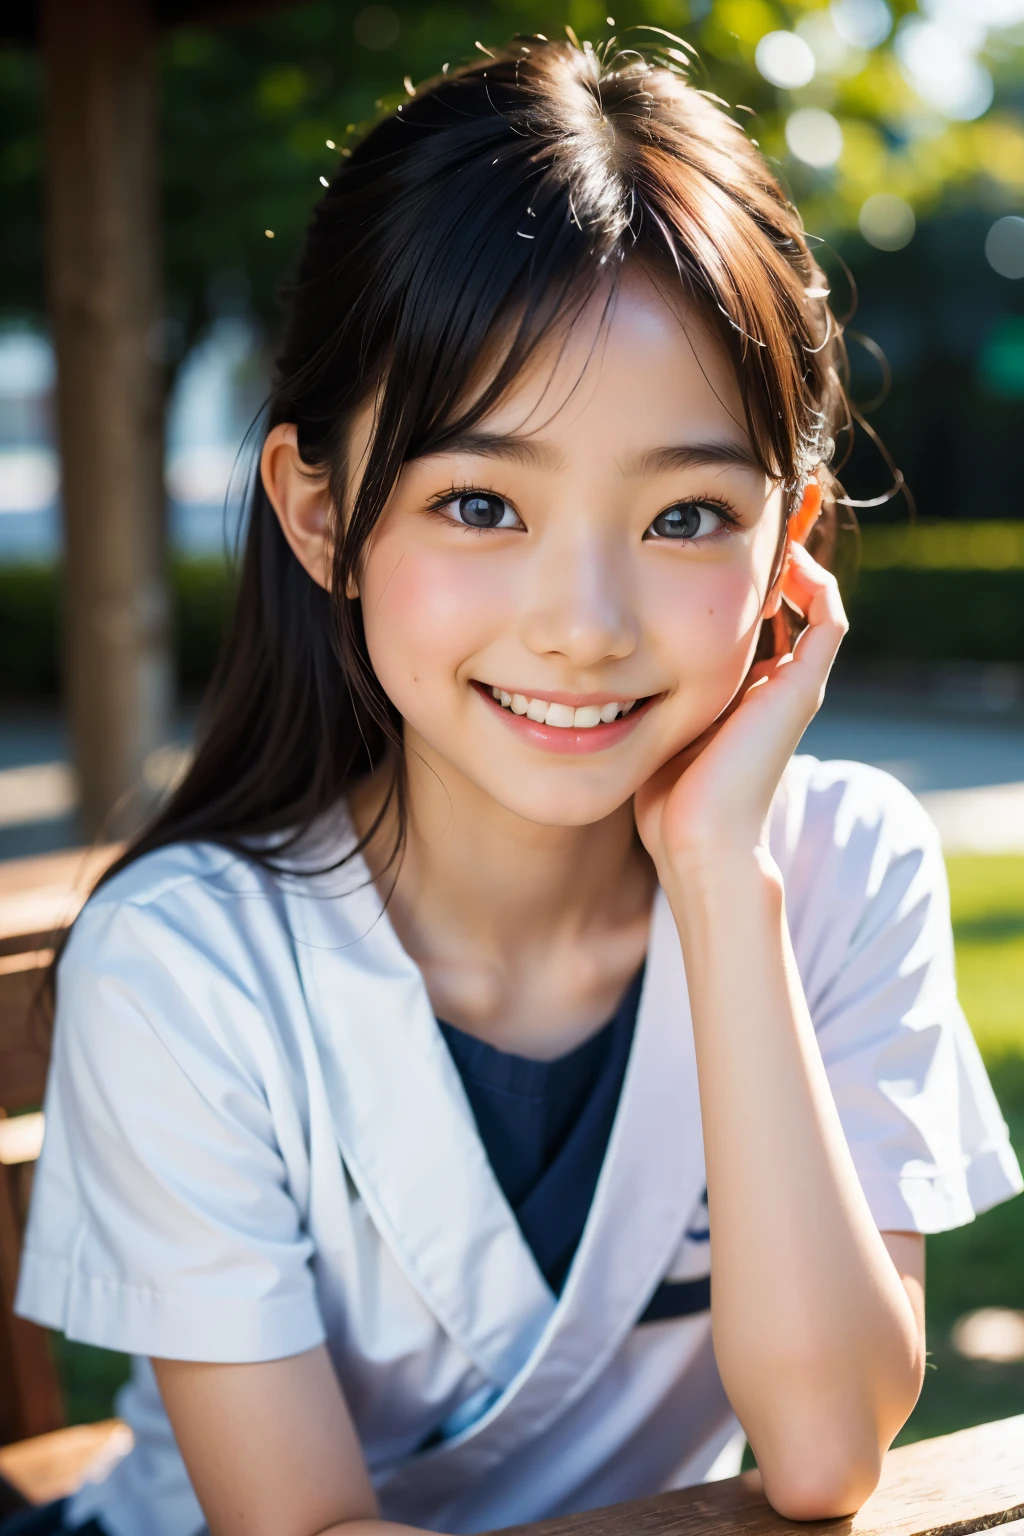 렌즈: 135mm f1.8, (최상의 품질),(RAW 사진), (탁상:1.1), (아름다운 12세 일본 소녀), 귀여운 얼굴, (깊게 파인 얼굴:0.7), (주근깨:0.4), dappled 햇빛, 극적인 조명, (일본 학교 교복), (캠퍼스에서), 수줍은, (클로즈업 샷:1.2), (웃다),, (반짝이는 눈)、(햇빛)